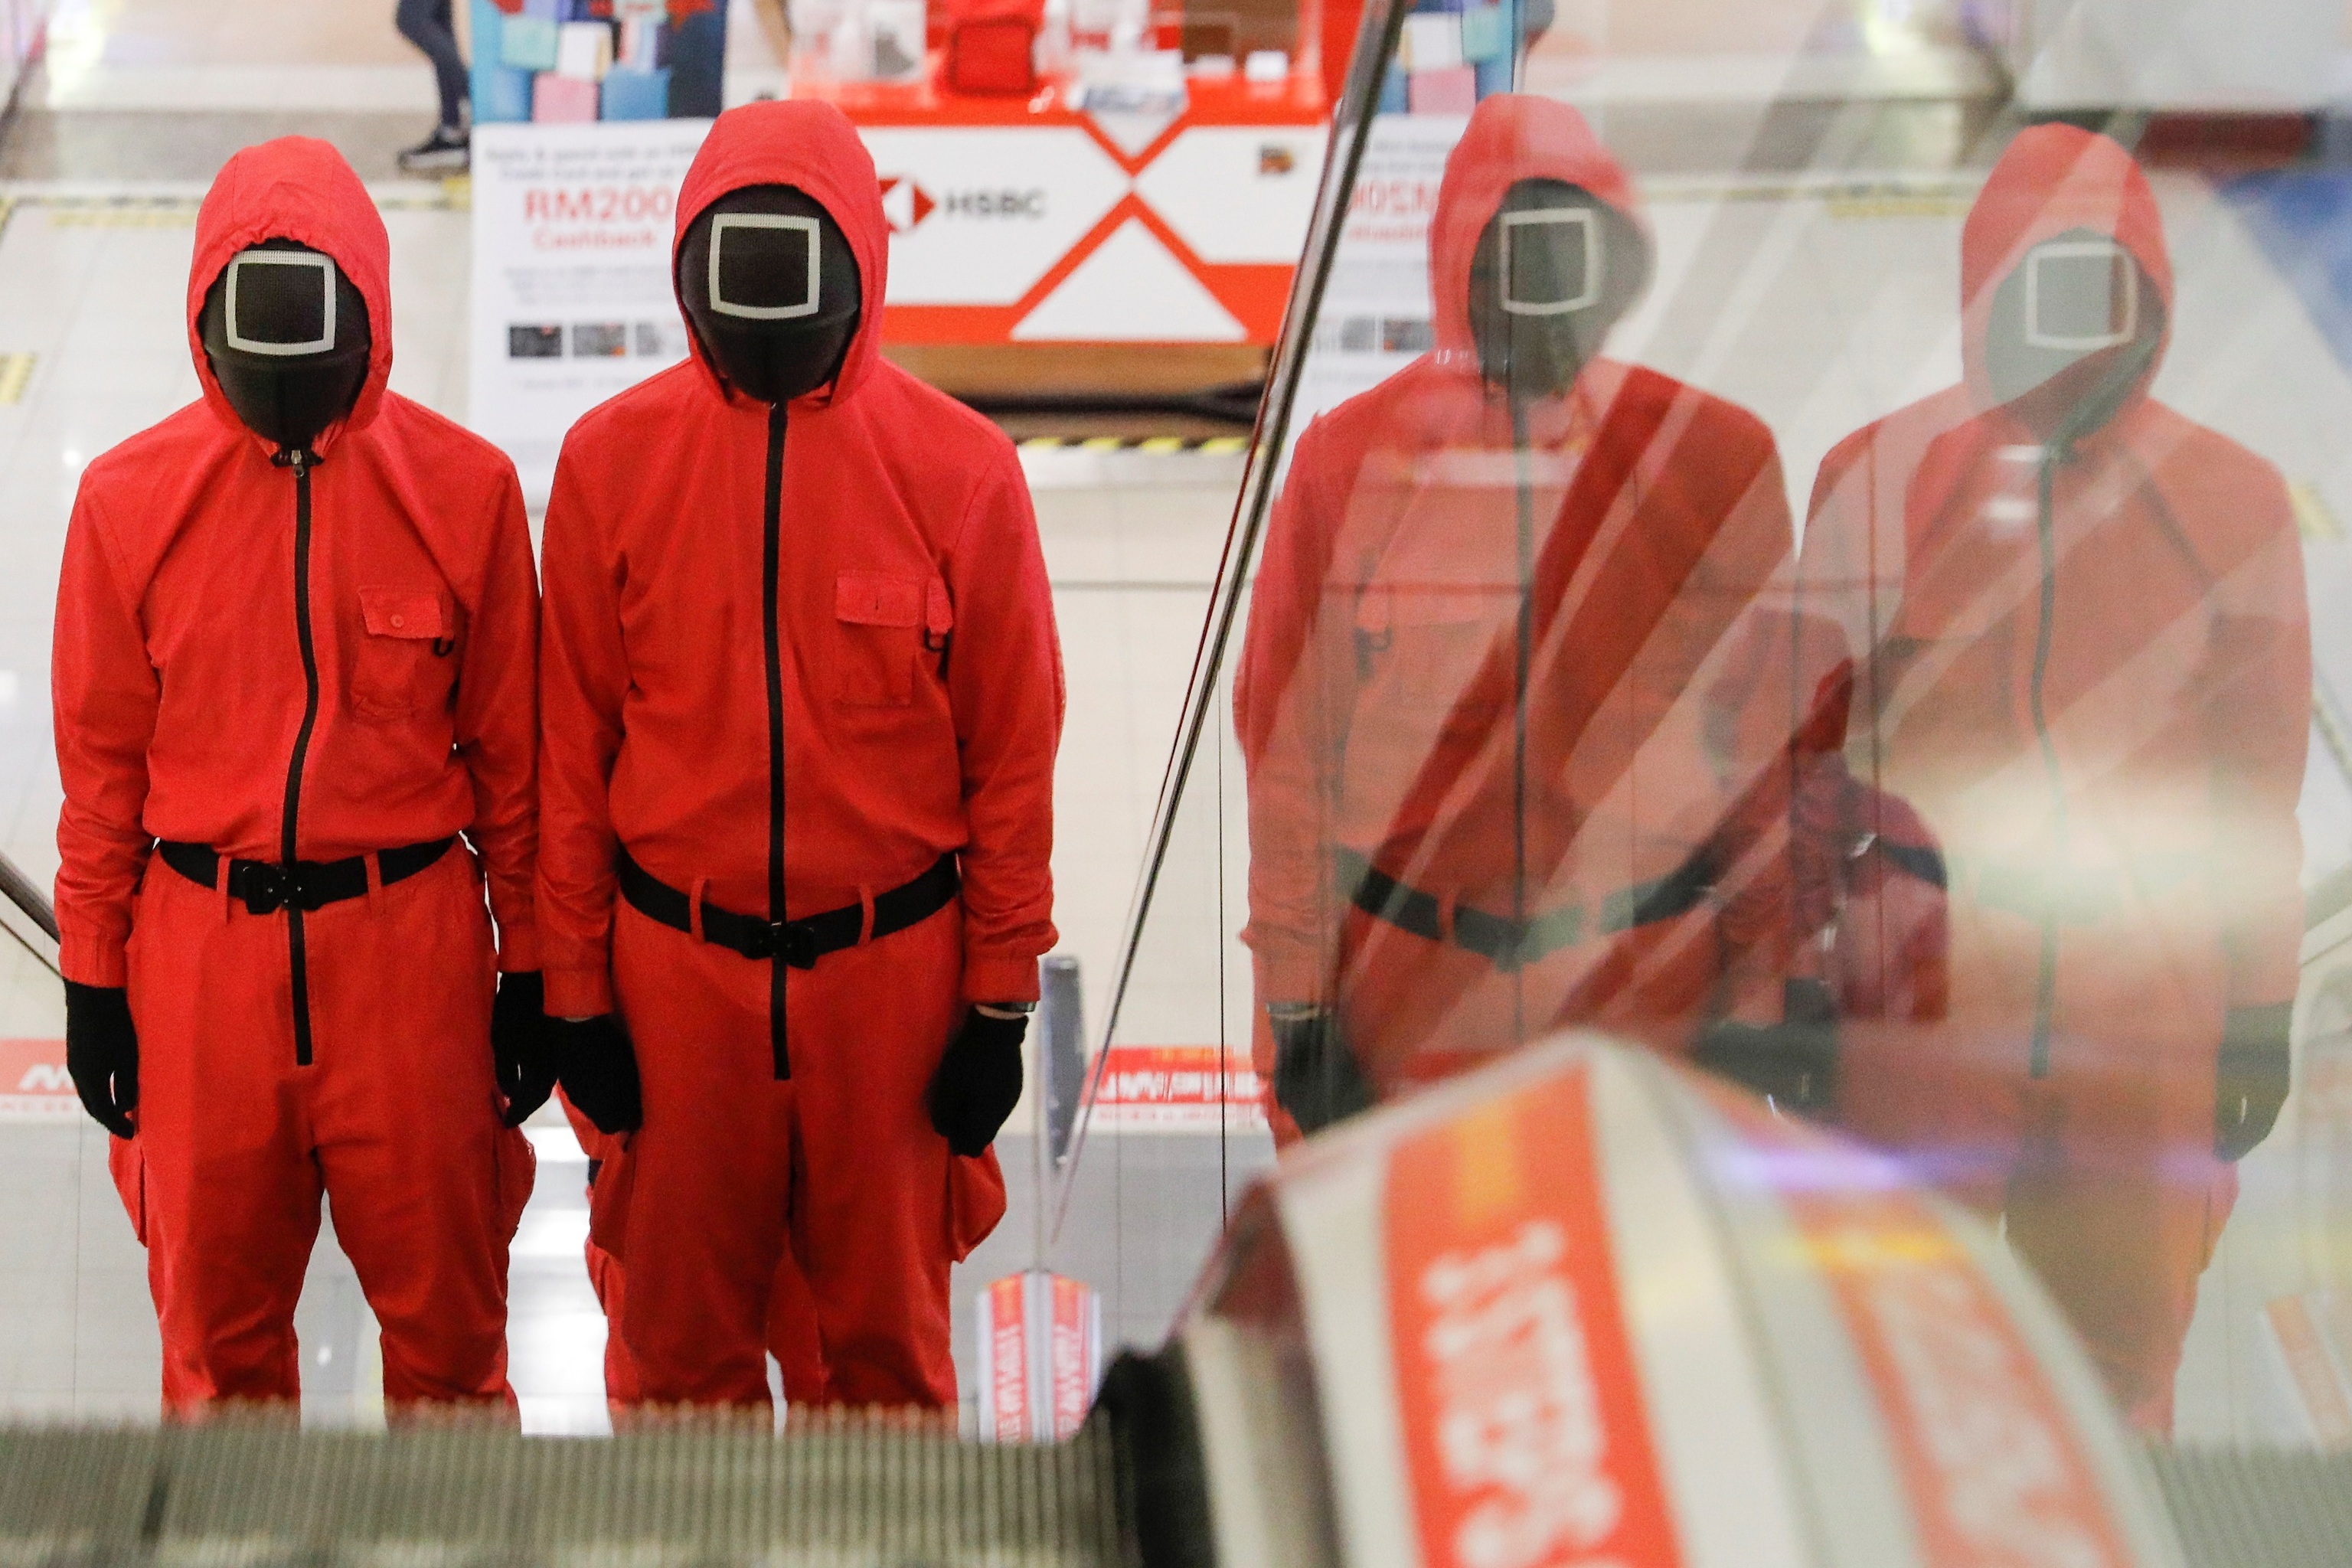 Dos personas disfrazadas de guardianes de la serie de Netflix El juego del calamar, subiendo las escaleras mecánicas de un centro comercial de Malasia.